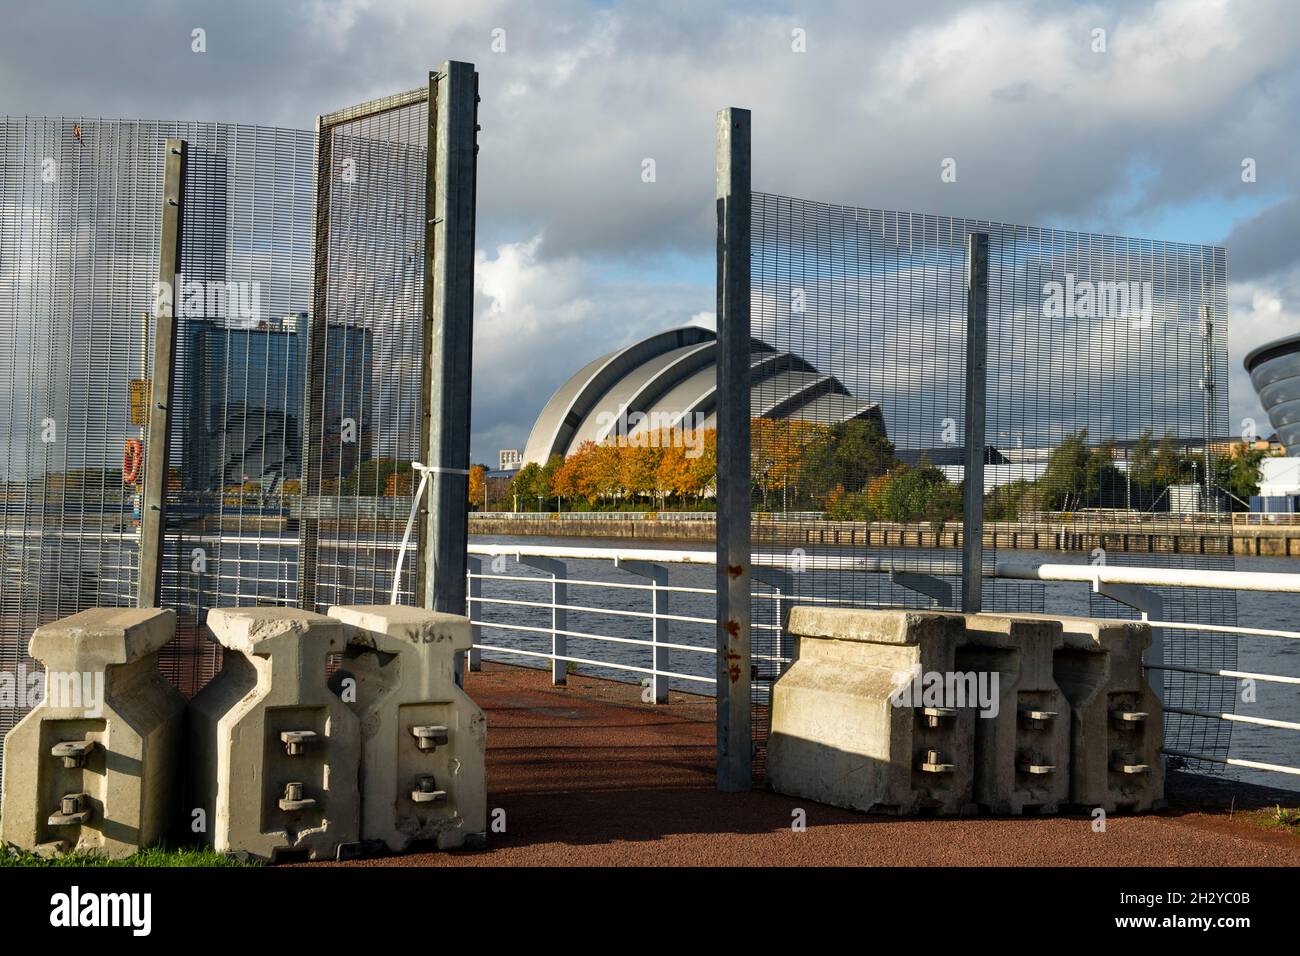 Glasgow, Écosse, Royaume-Uni.24 octobre 2021 EN PHOTO : l'anneau de la clôture de sécurité en acier et des barrières antiprotéstor s'étendent sur tout le périmètre de la zone COP26.Vue sur le site de la COP26 montrant la rivière Clyde et le quai, avec les bâtiments du Scottish Event Campus (OVO Hydro Arena, SEC Armadillo et SECC) ainsi que le Crown Plaza Hotel et la clôture de sécurité en acier entourant la région.Quelques jours avant que les chefs d'État, ainsi que des milliers de délégués, de médias et de manifestants, soient attendus à Glasgow très prochainement pour le début du Sommet sur les changements climatiques Banque D'Images